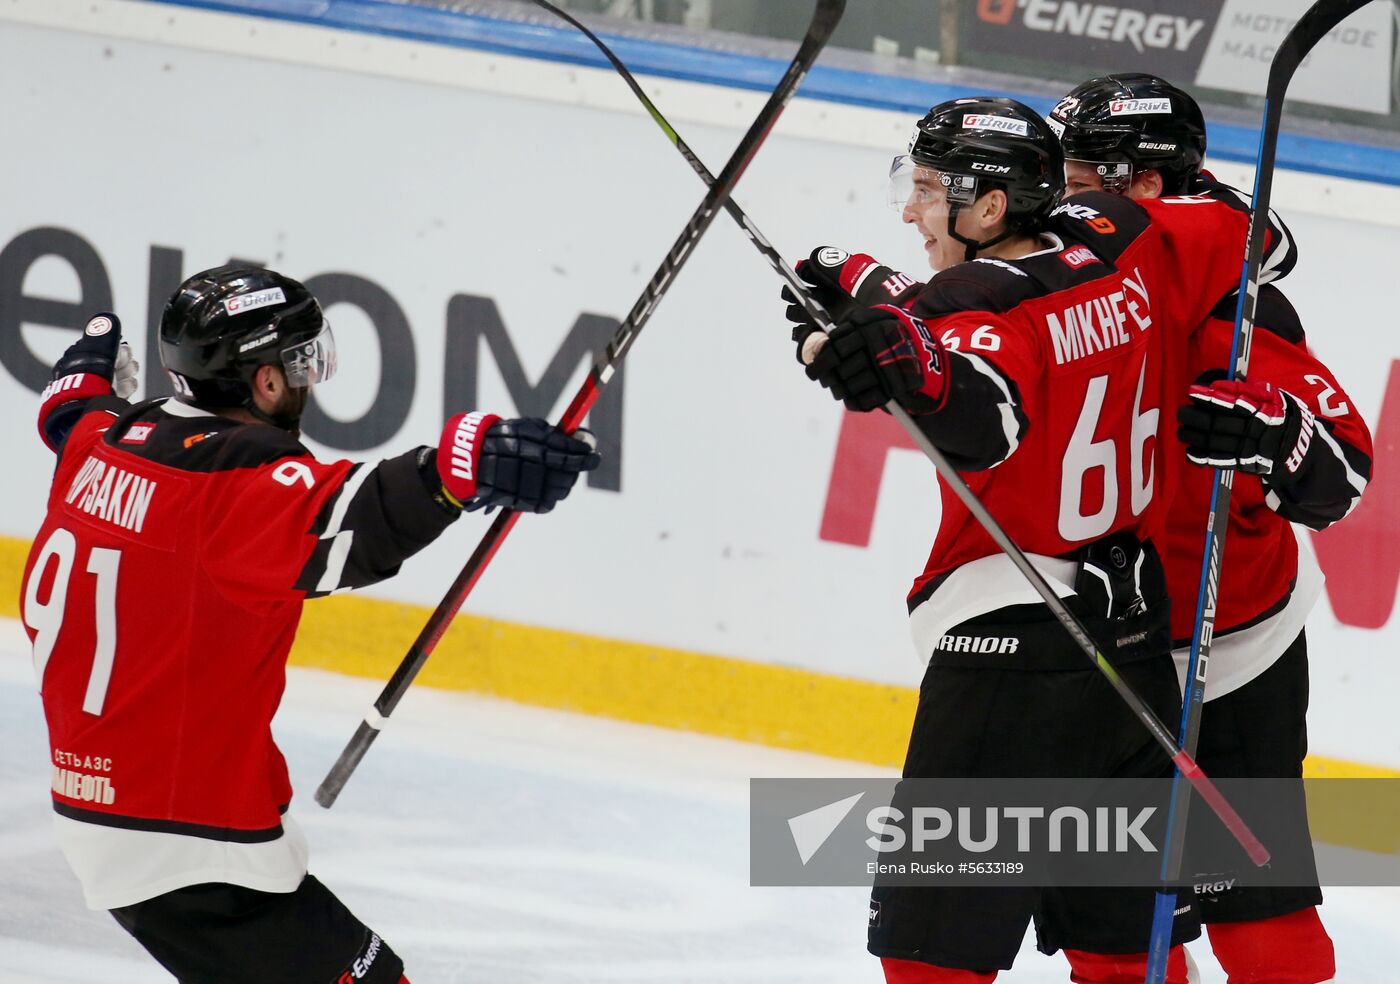 Russia Ice Hockey Avangard - Neftekhimik